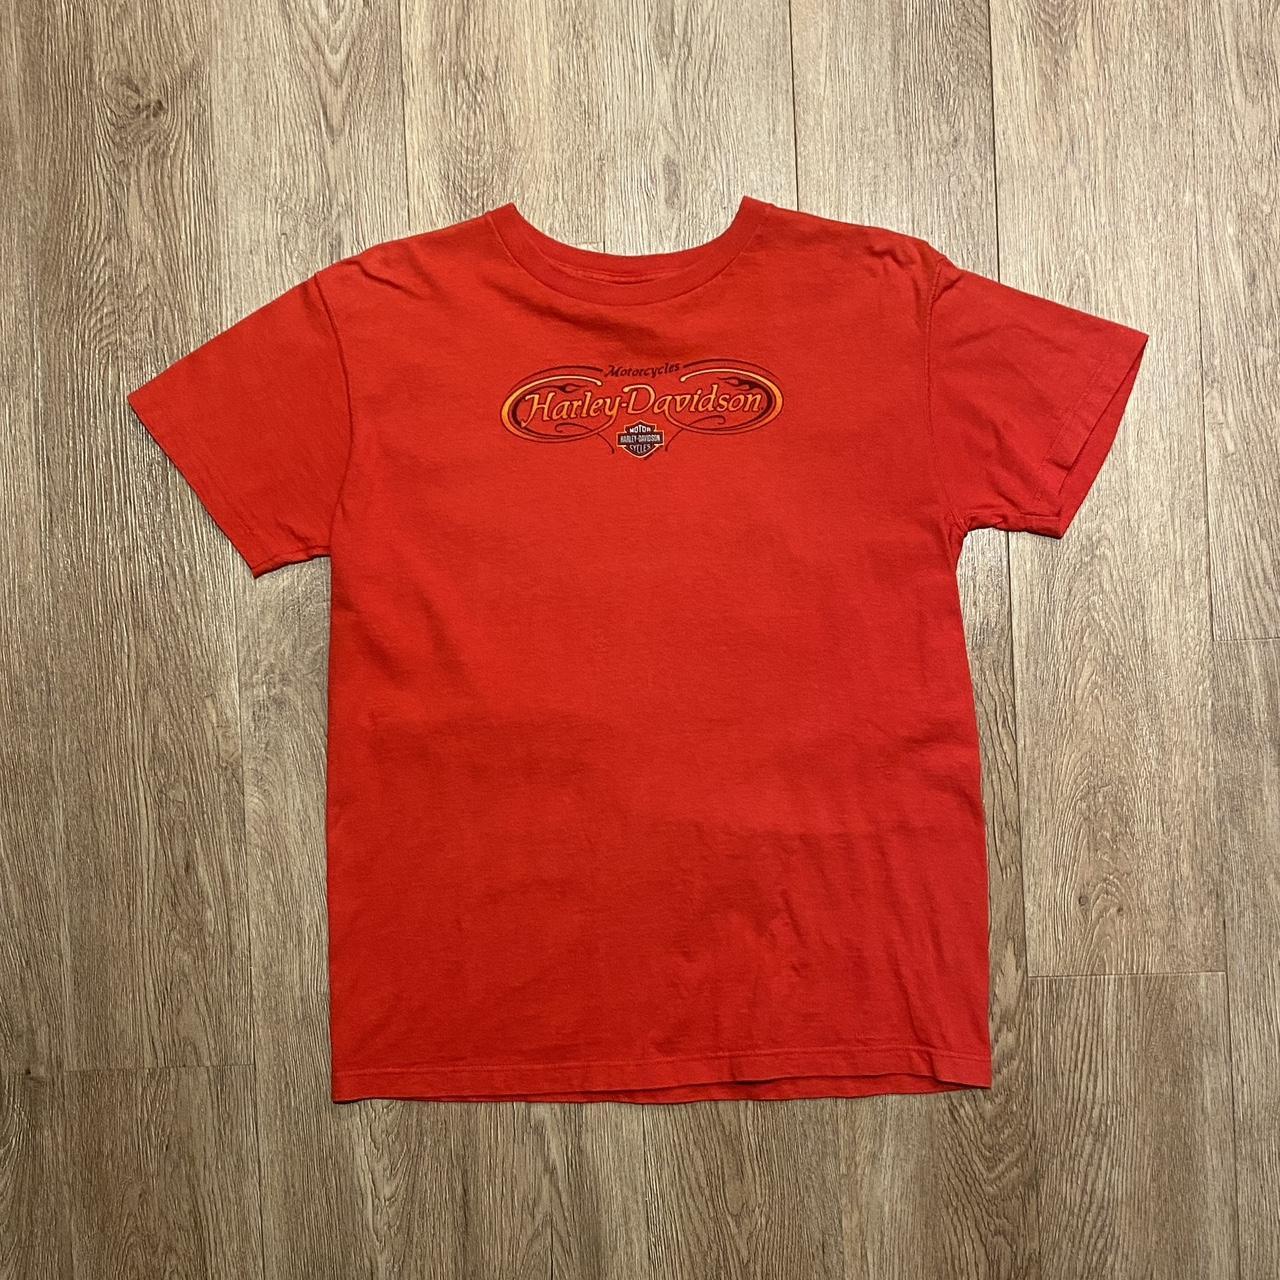 Harley Davidson Men's Red T-shirt | Depop